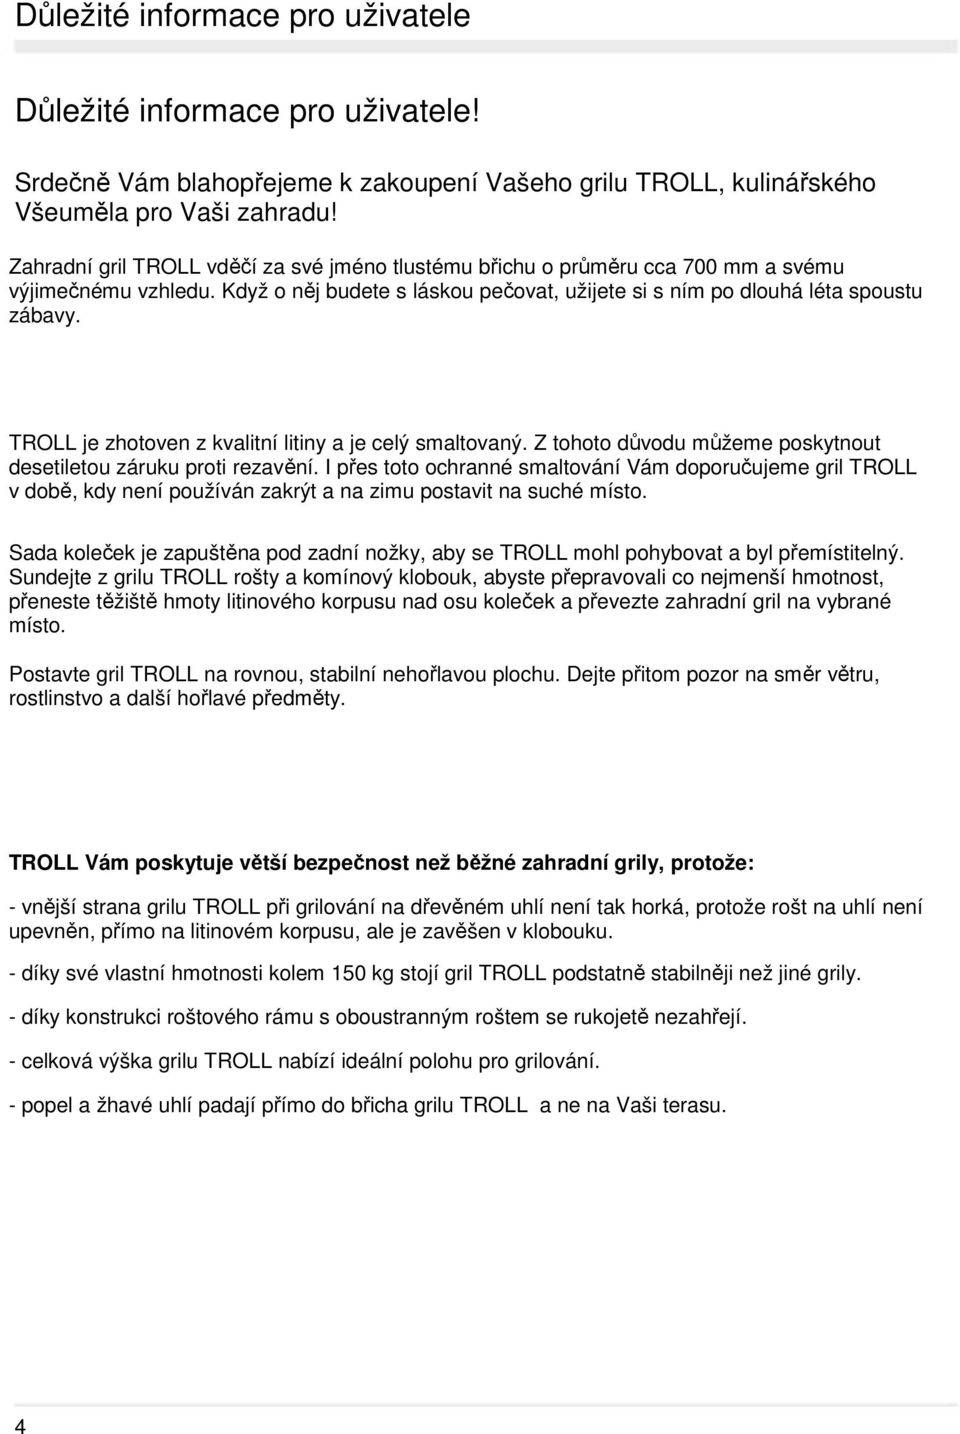 TROLL je zhotoven z kvalitní litiny a je celý smaltovaný. Z tohoto důvodu můžeme poskytnout desetiletou záruku proti rezavění.